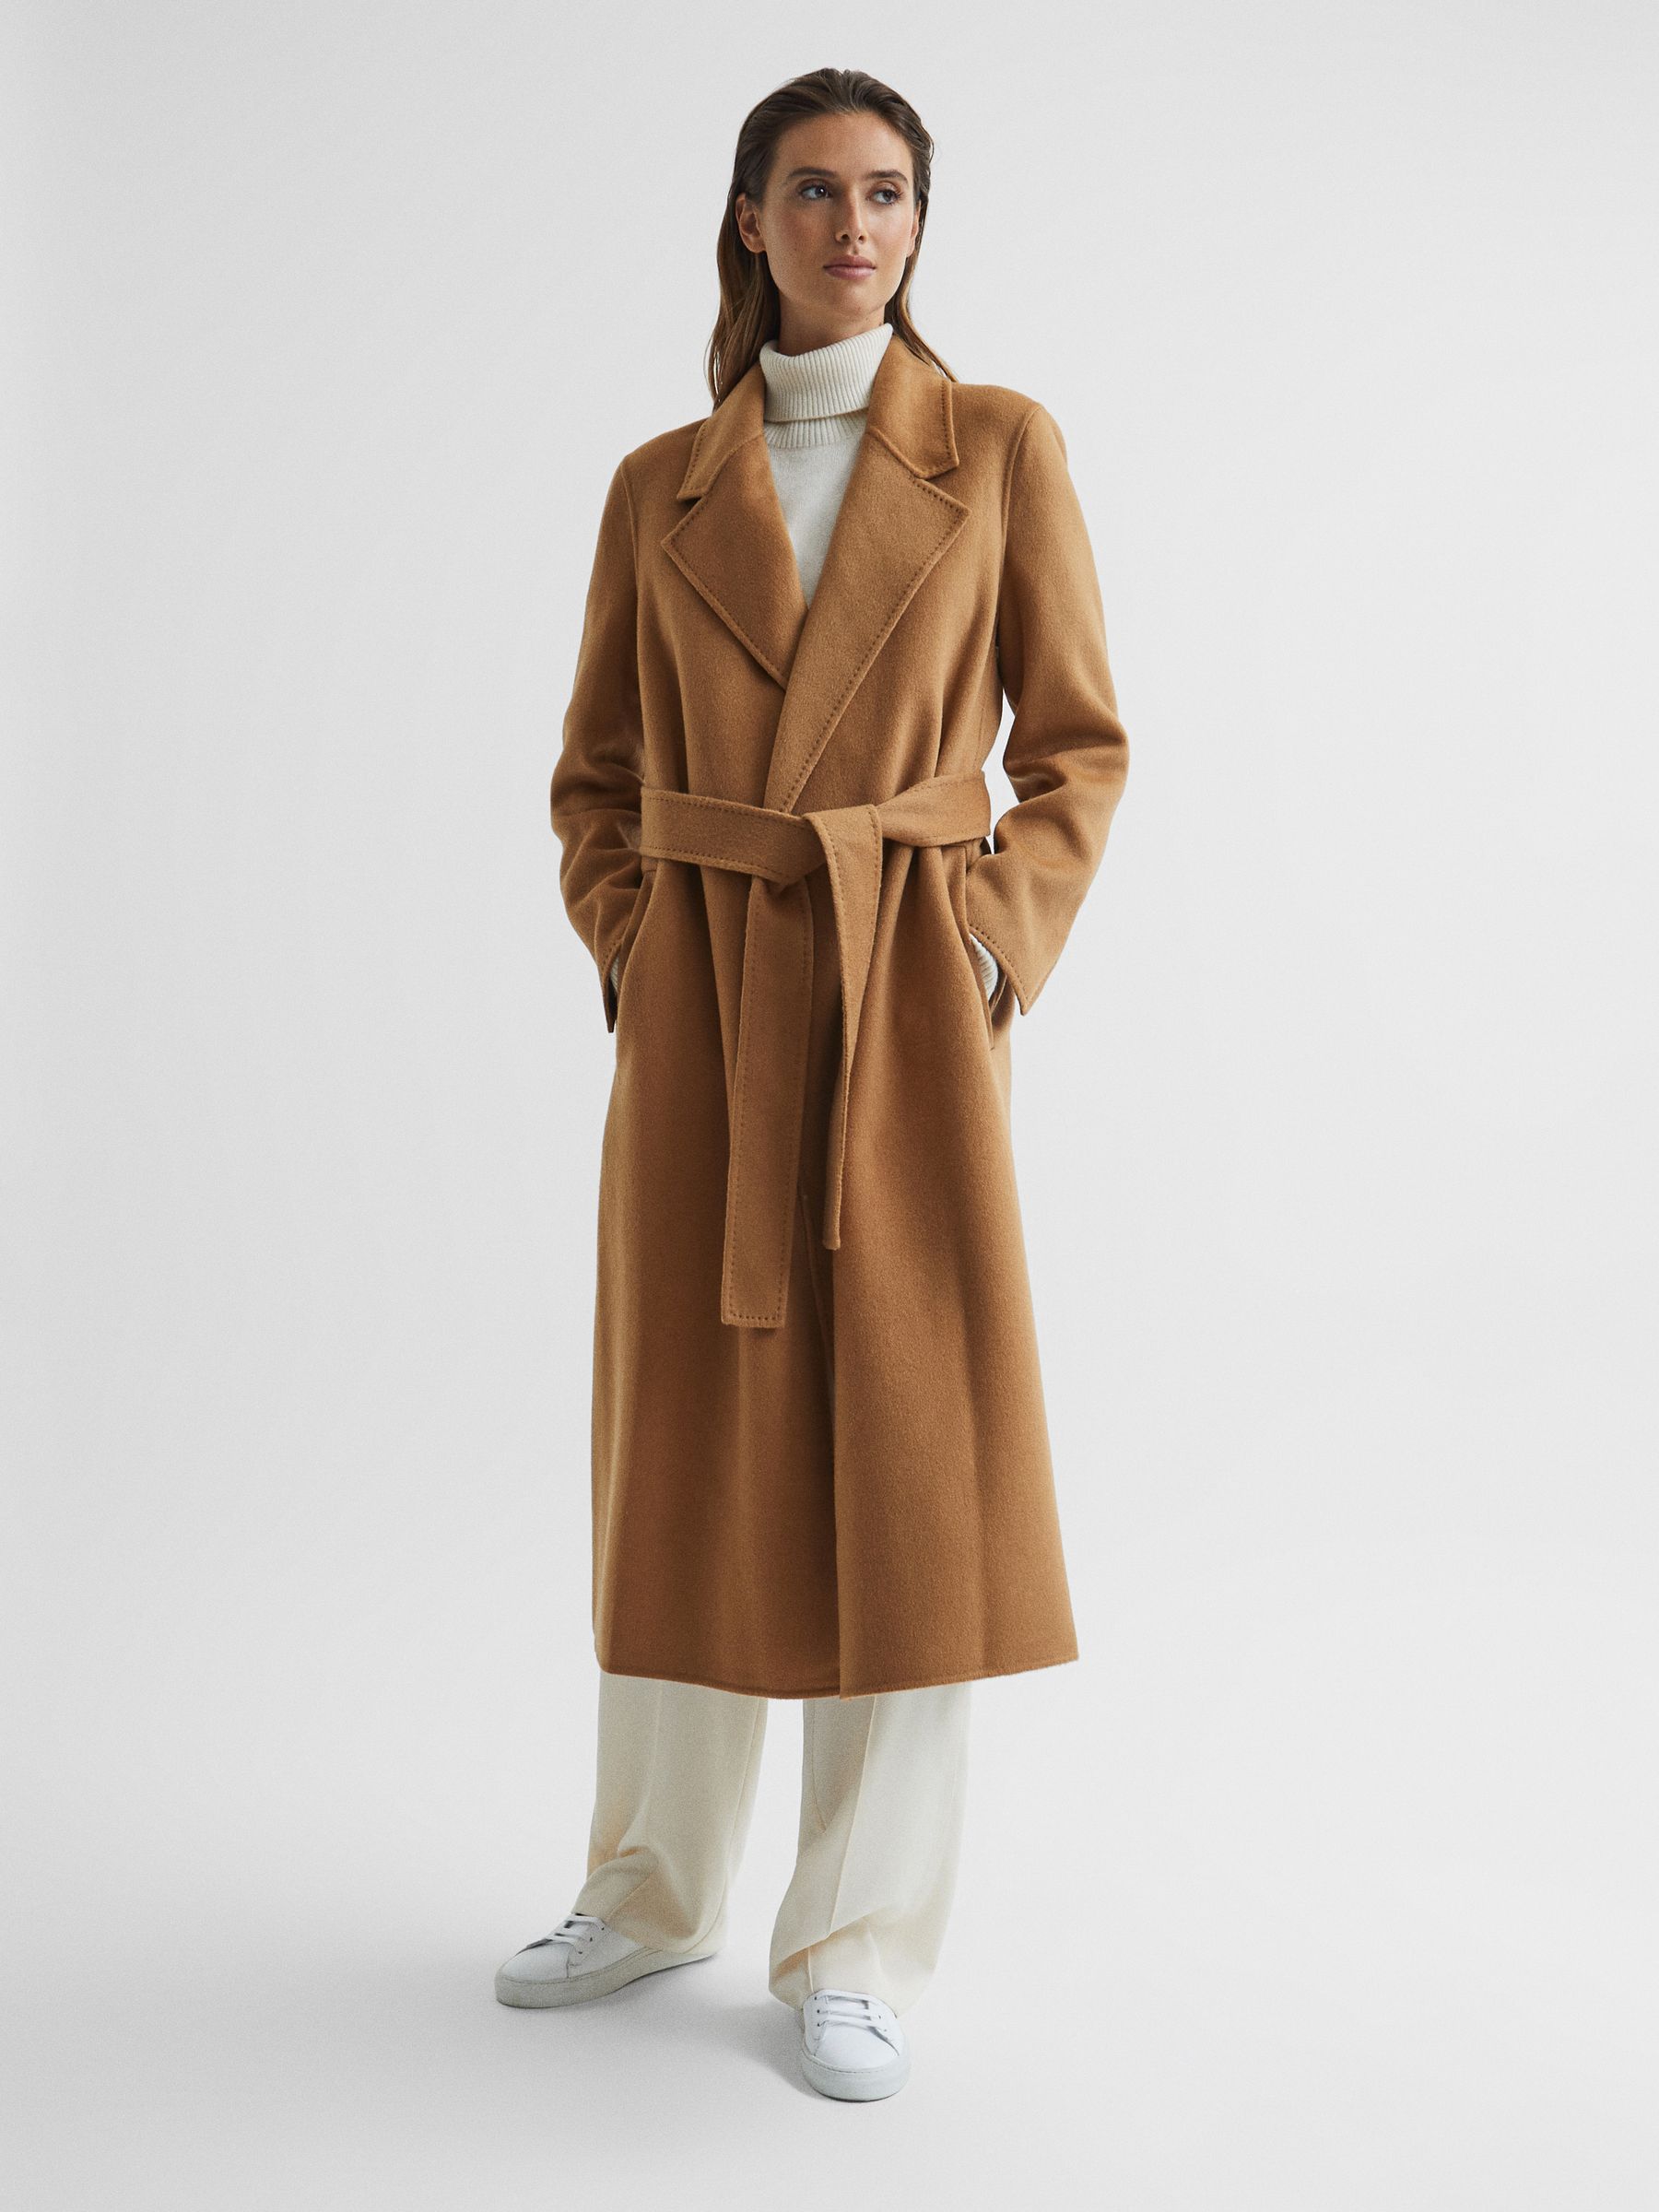 Reiss Honor 100% Cashmere Wool Blindseam Long Coat - REISS